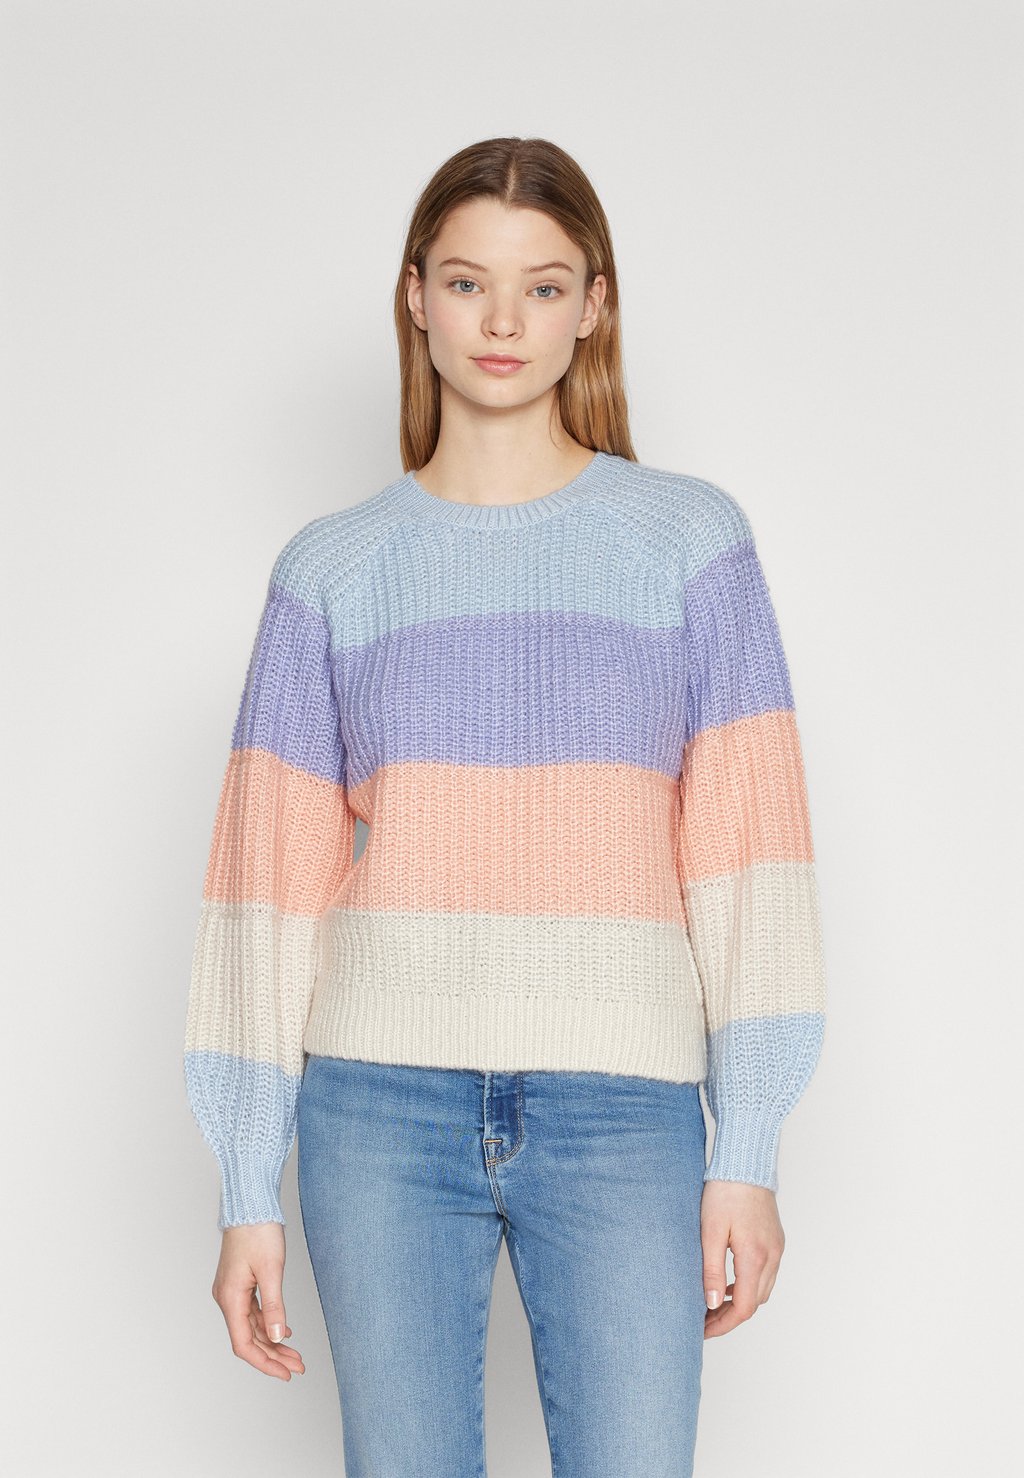 Вязаный свитер VILAILA O-NECK RAGLAN TOP, цвет kentucky blue detail/sweet lavender/coral/white sand